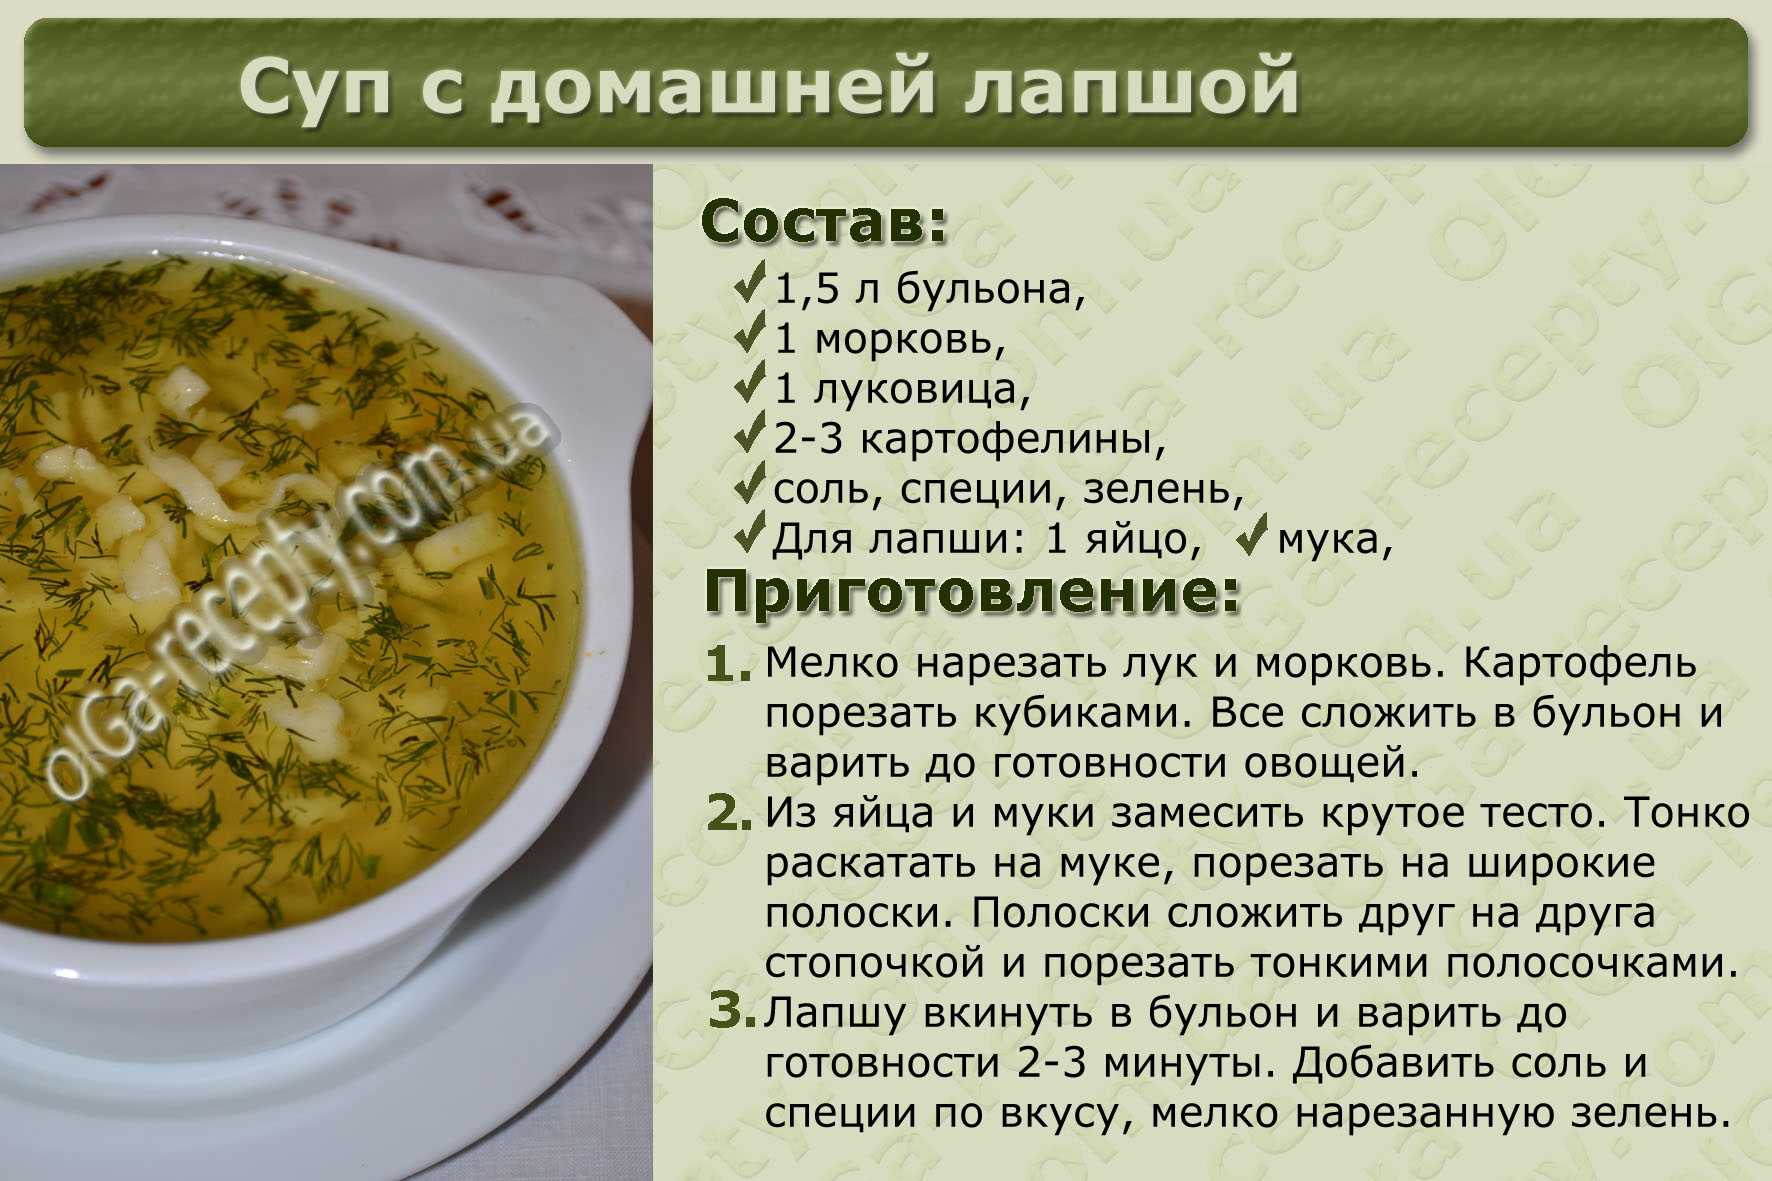 ✅ как сделать домашнюю лапшу для супа - макдонар.рф